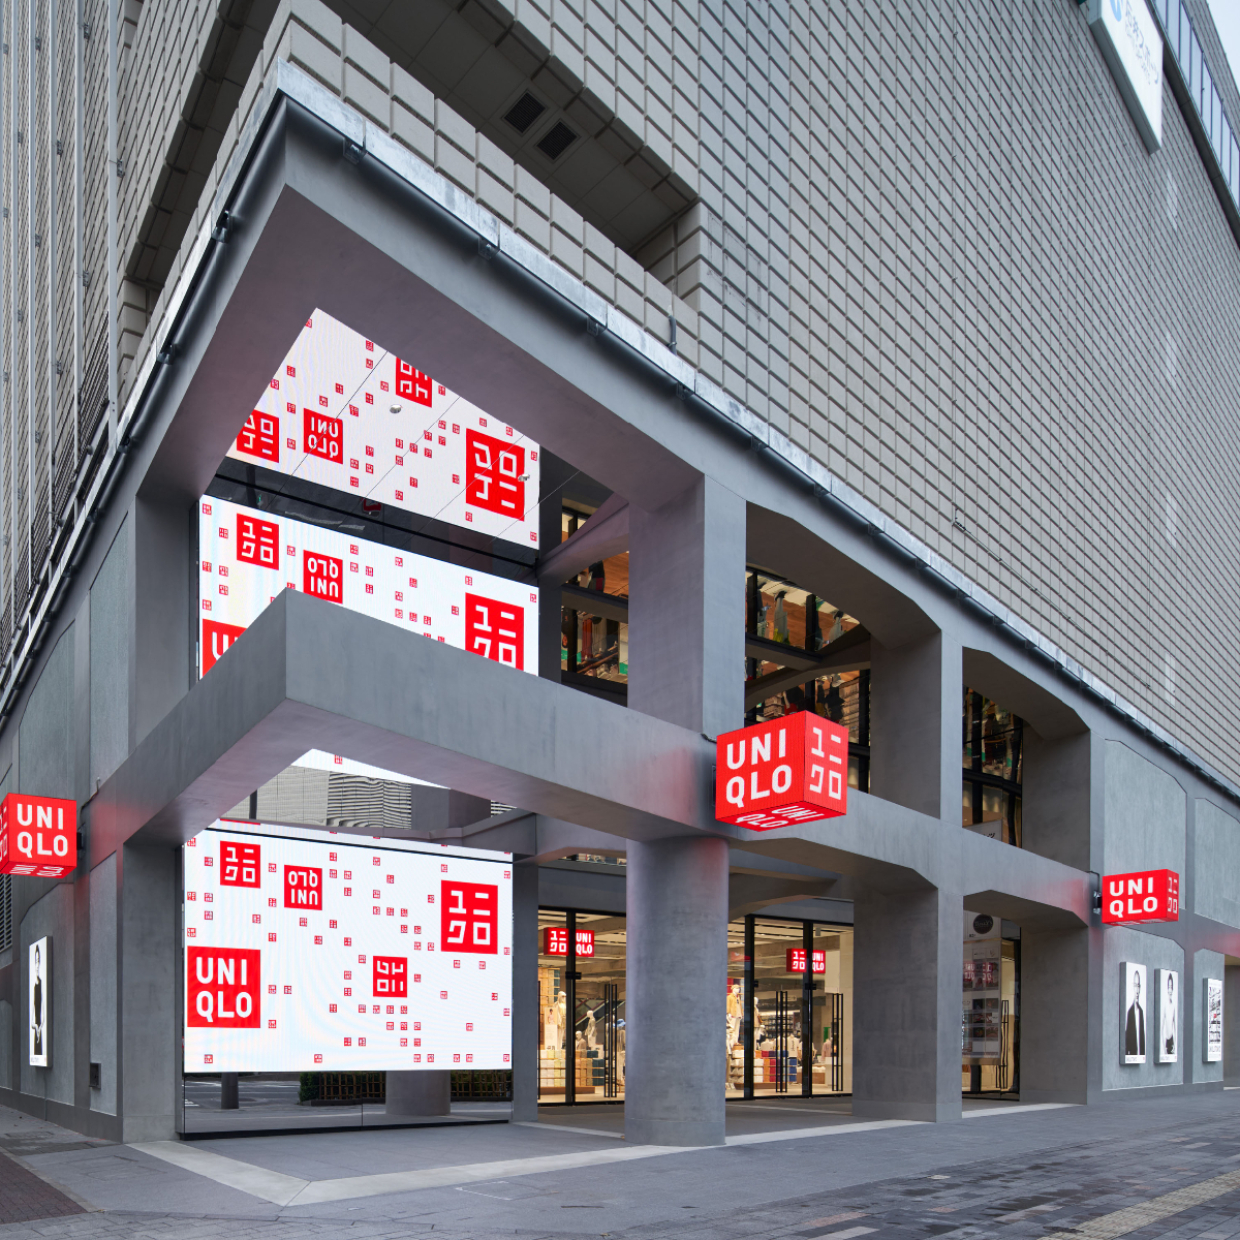  「UNIQLO TOKYO」に見る新しいアパレルの在り方。銀座にグローバル旗艦店がオープン！ 